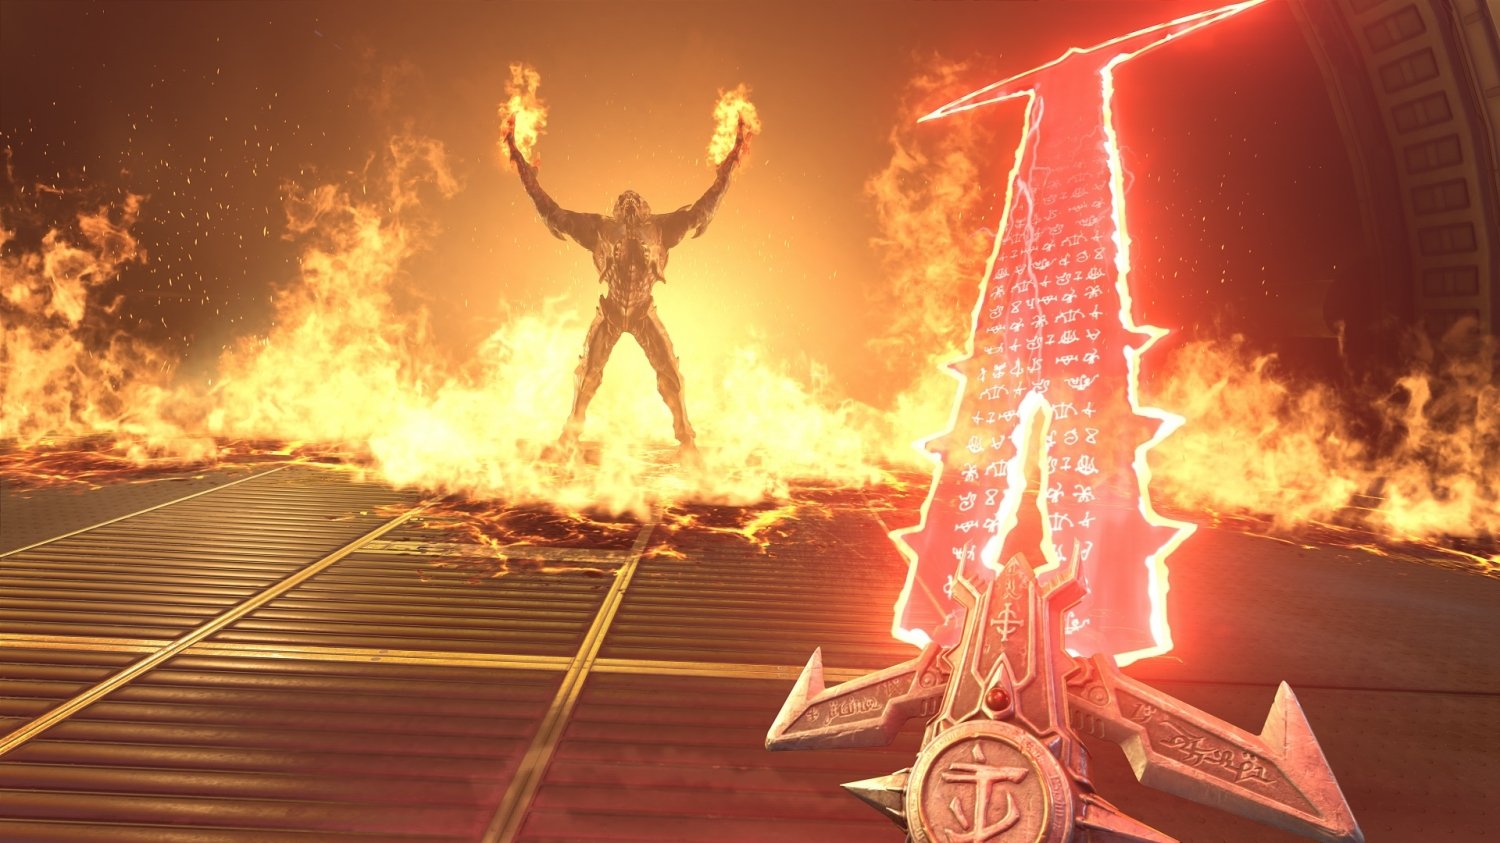 Doom Eternal runs at 1440p 60FPS on PS4 